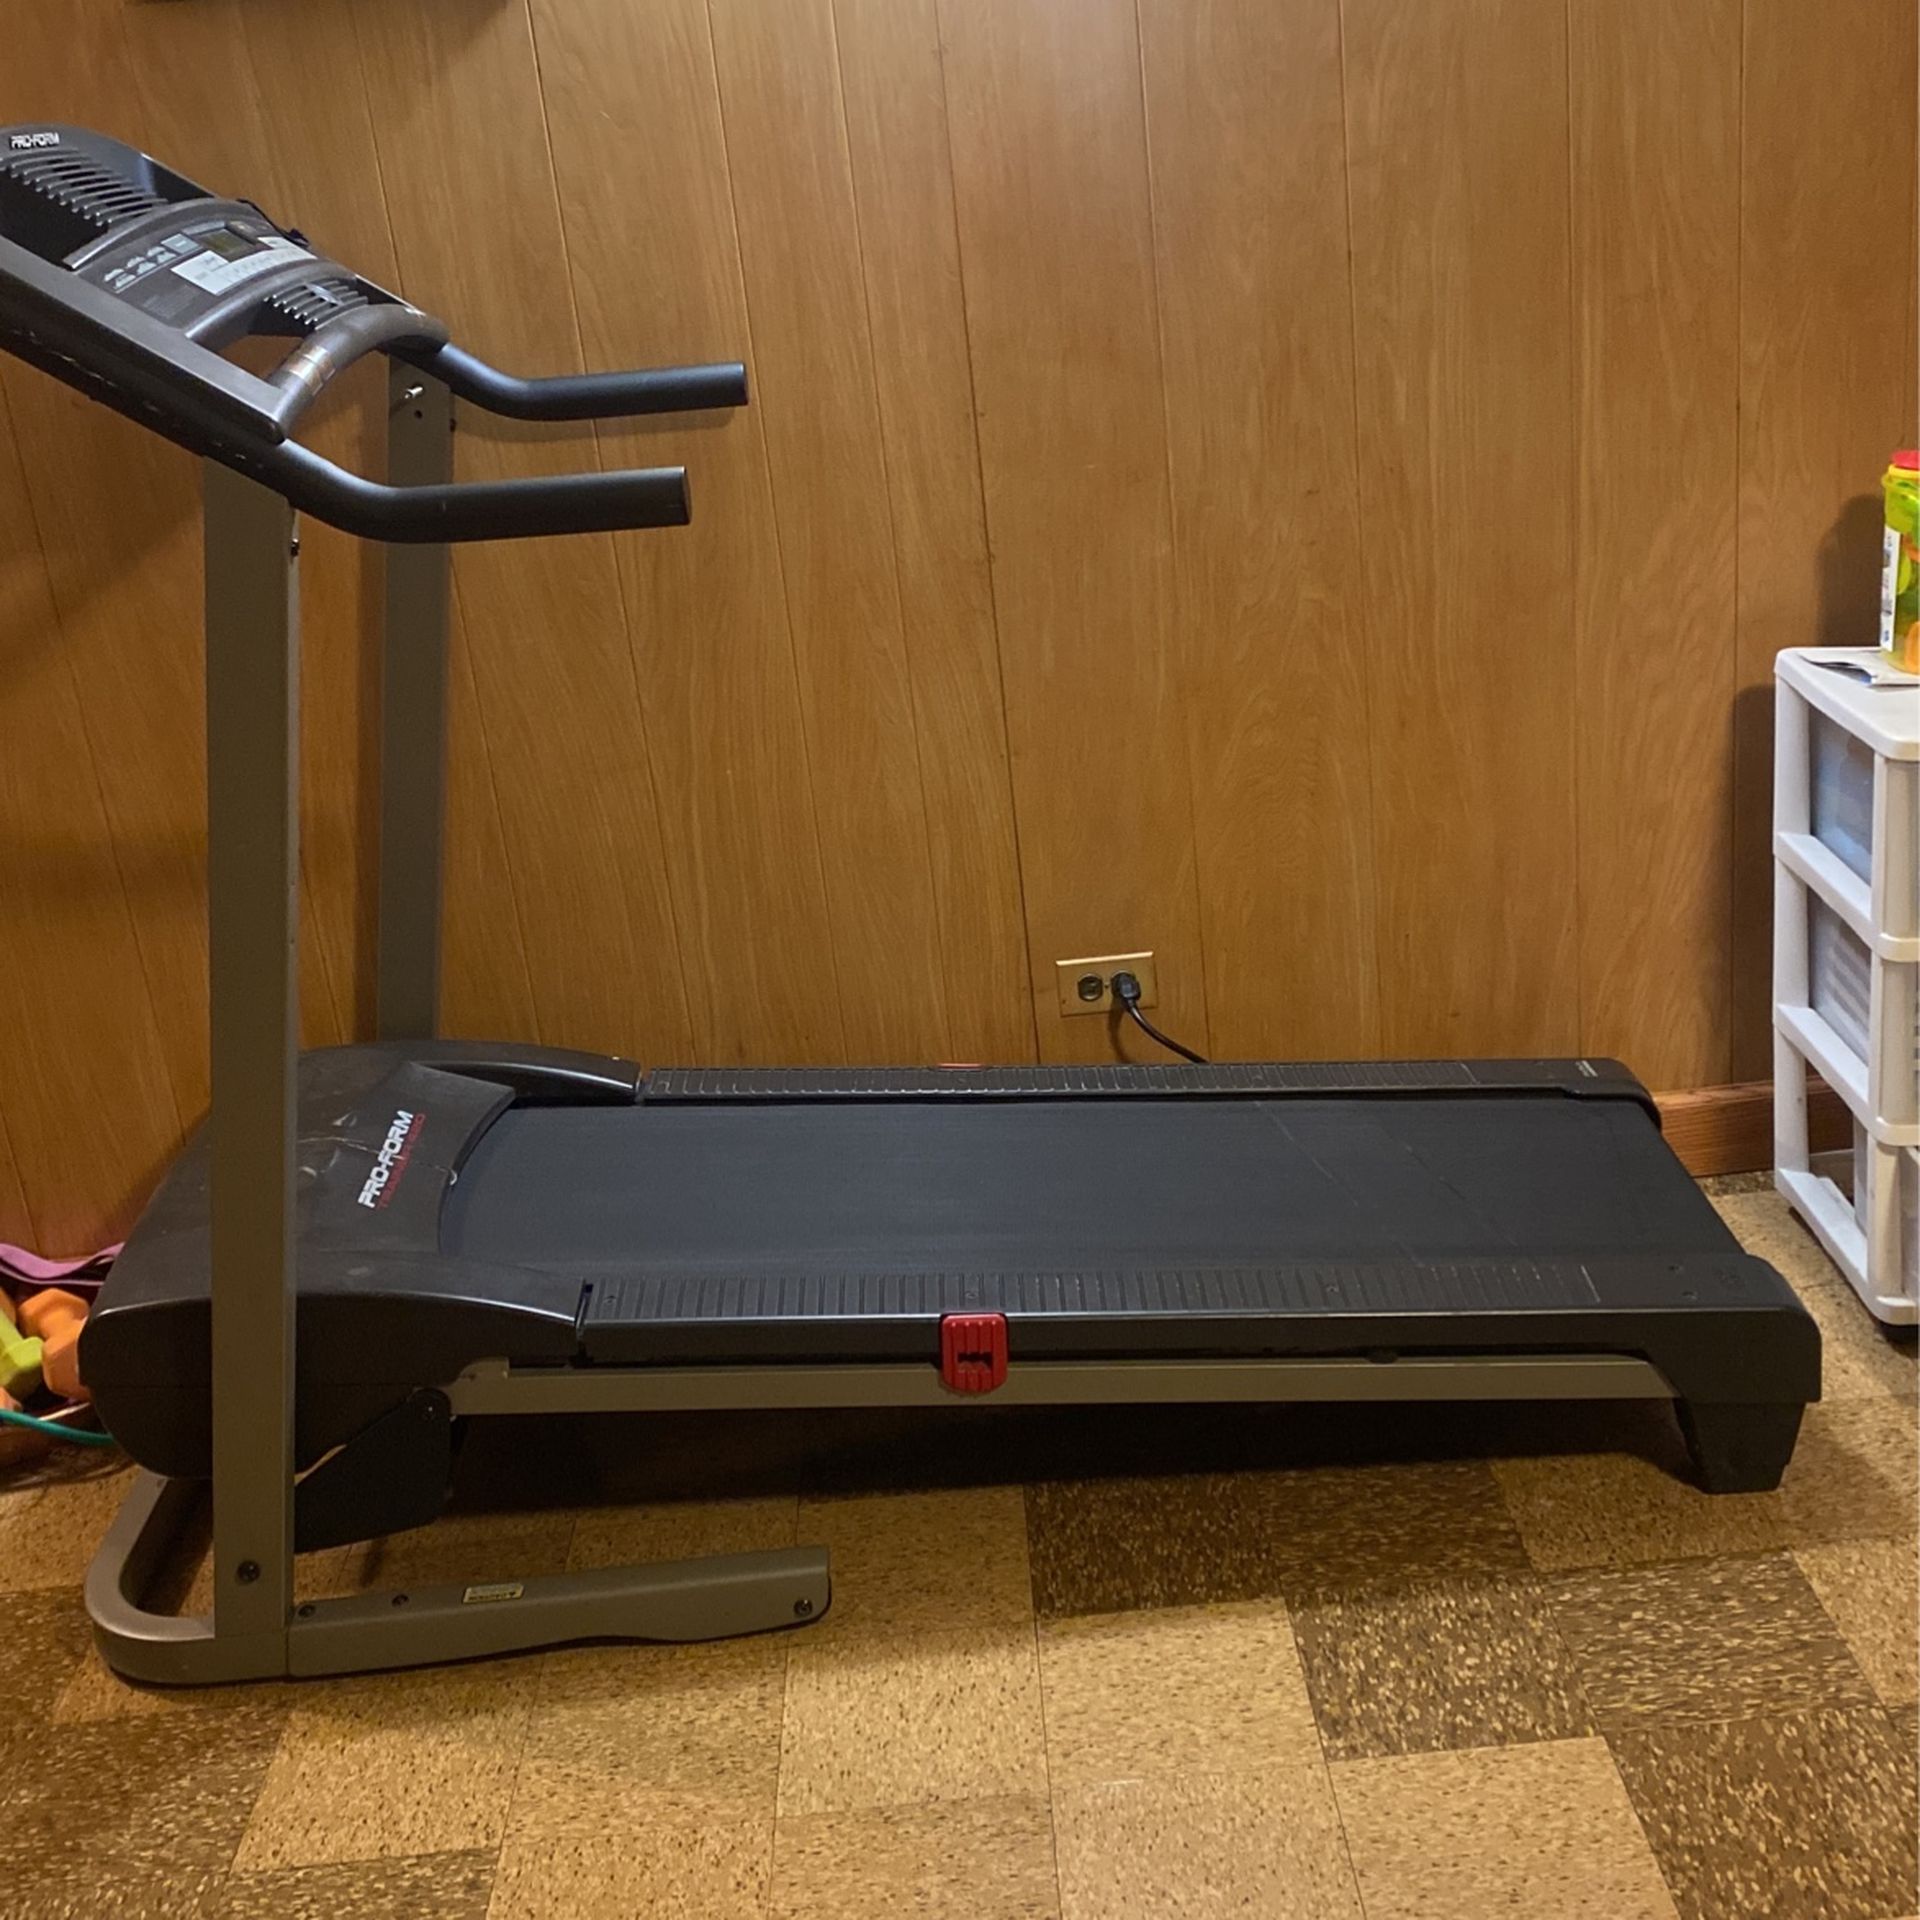 Pro-form Treadmill